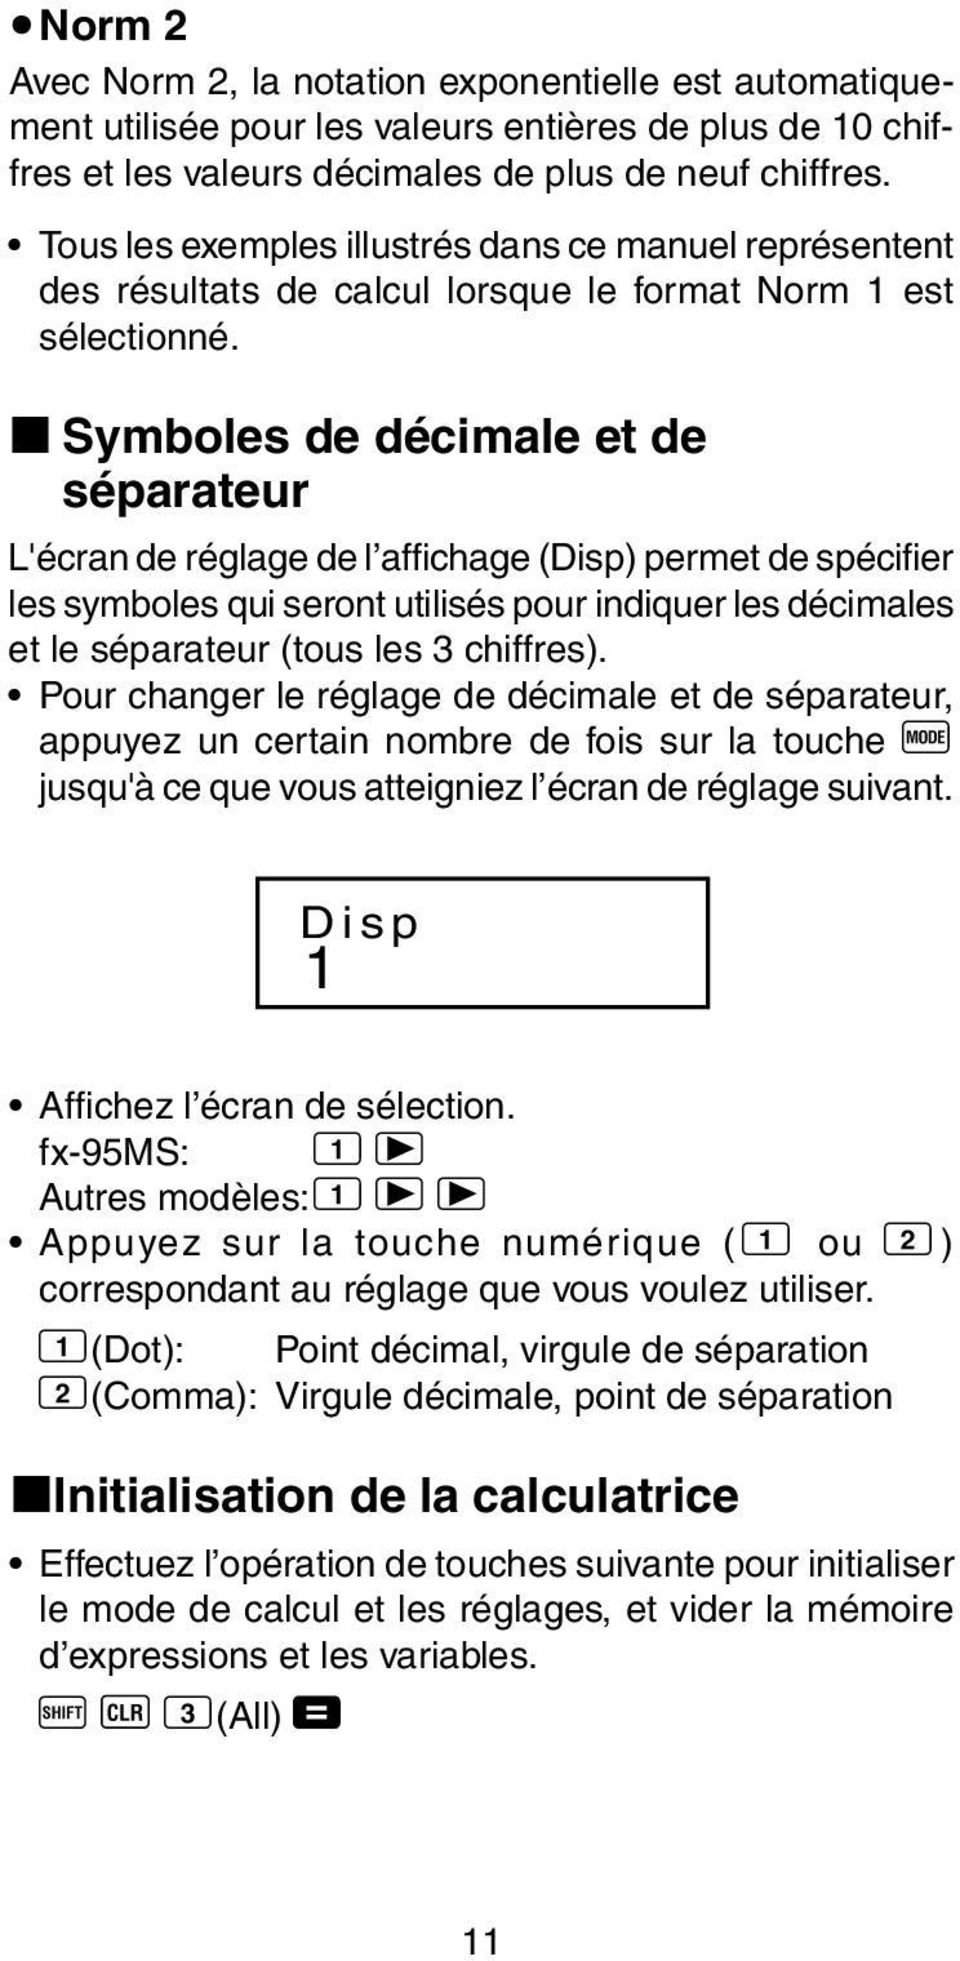 k Symboles de décimale et de séparateur L'écran de réglage de l affichage (Disp) permet de spécifier les symboles qui seront utilisés pour indiquer les décimales et le séparateur (tous les 3